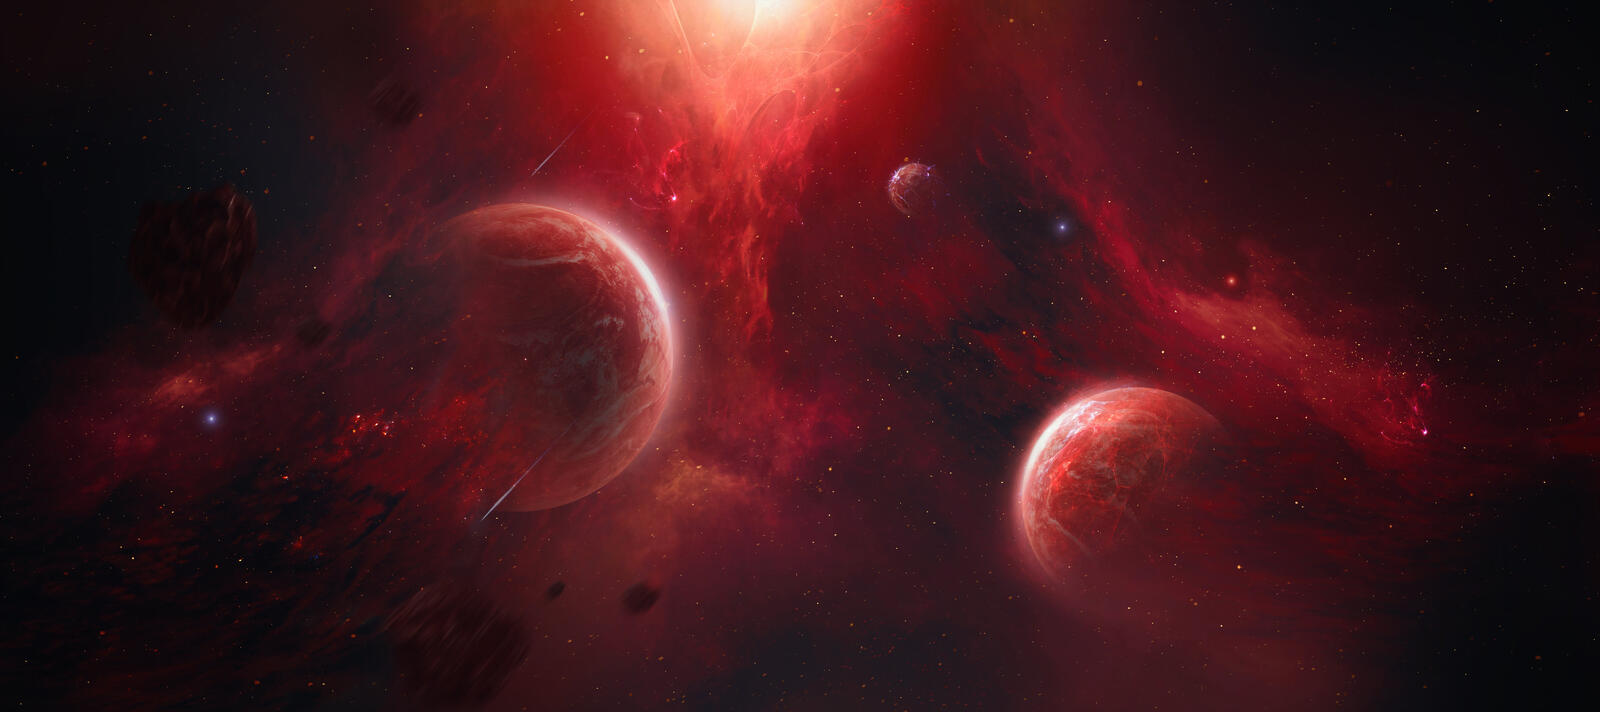 Бесплатное фото Космос с красной туманностью